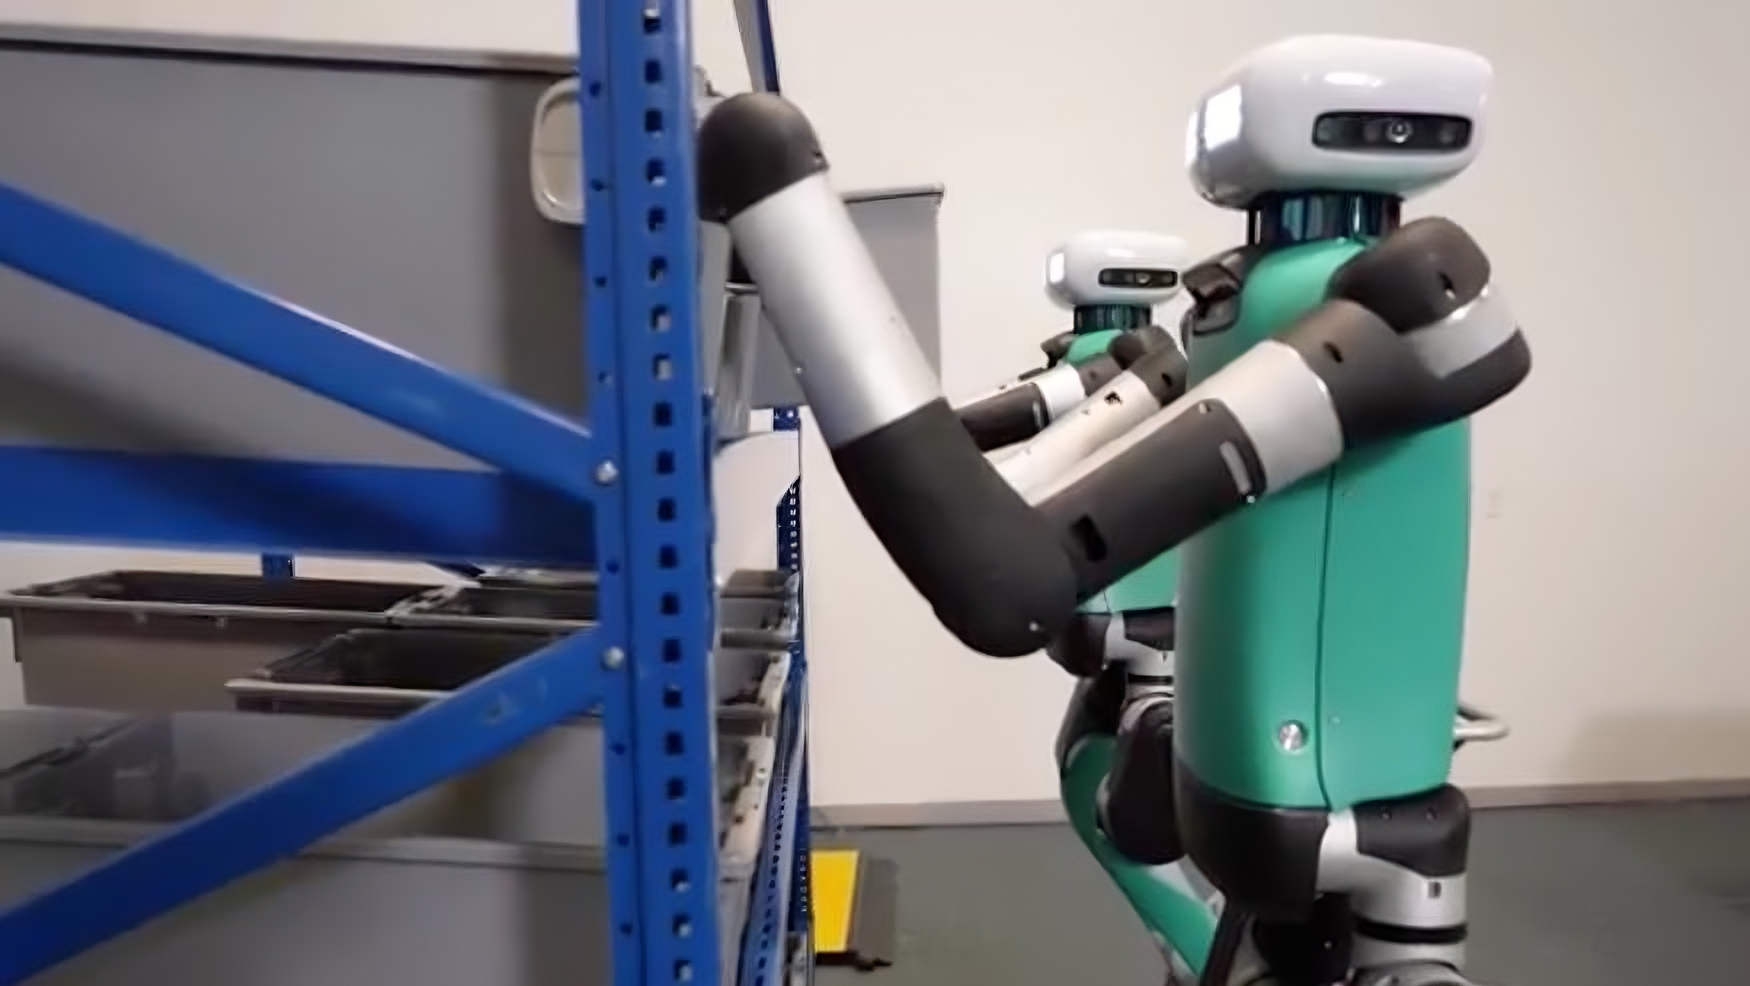 Conçu pour remplacer l'humain sur les tâches pénibles, ce robot a enfin une tête... et c'est bien mieux comme ça